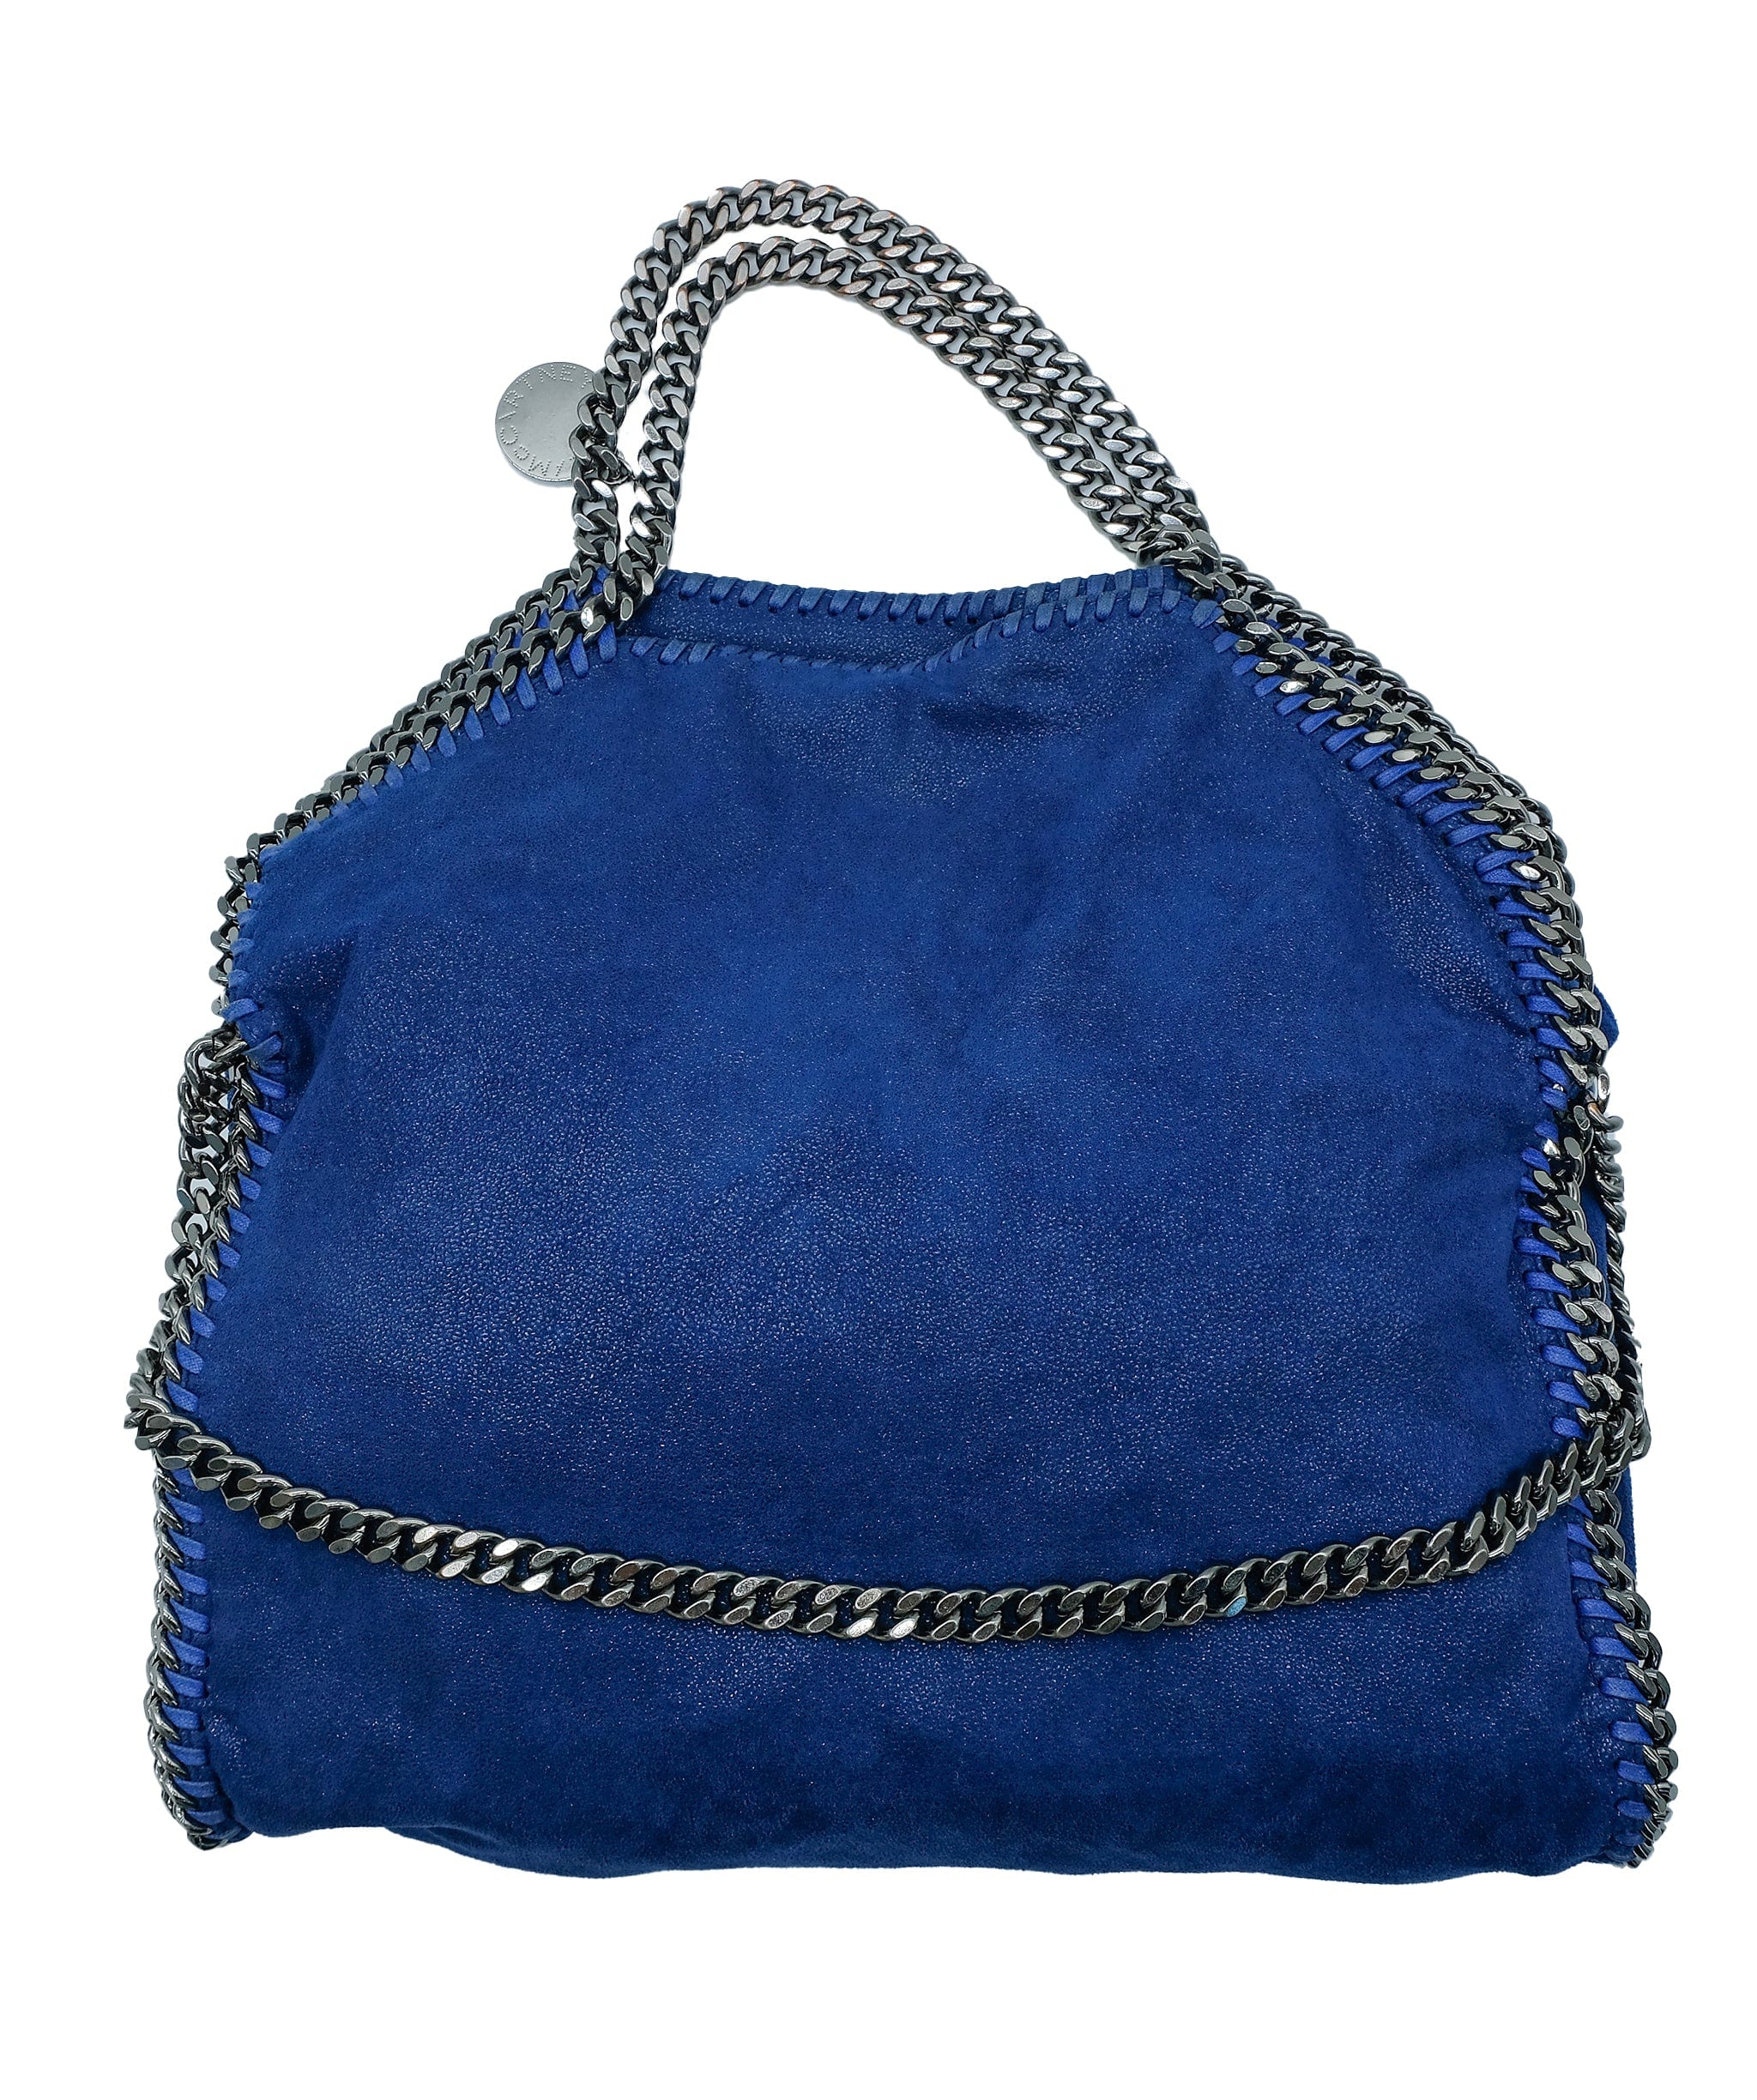 Stella McCartney Stella McCartney Falabella Blue Bag  RJC2042